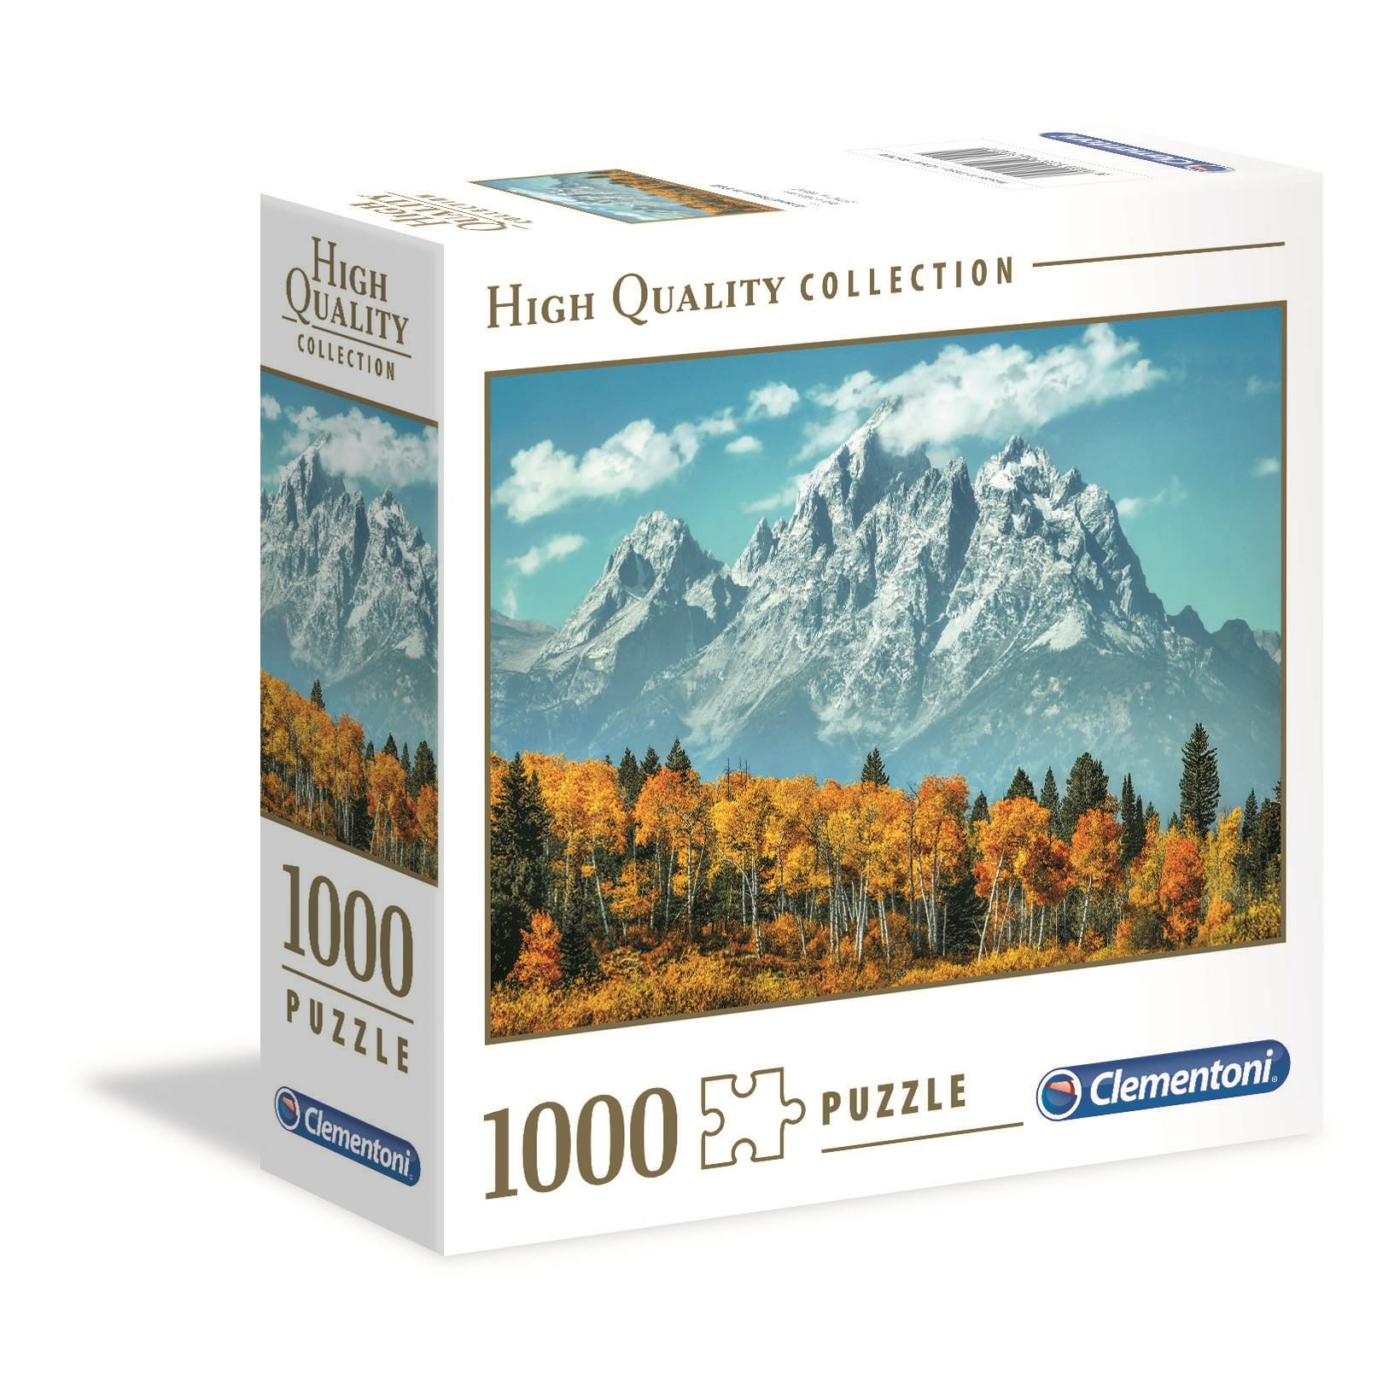 1000 db-os High Quality Collection puzzle négyzet alakú dobozban - A Grand Teton ősszel